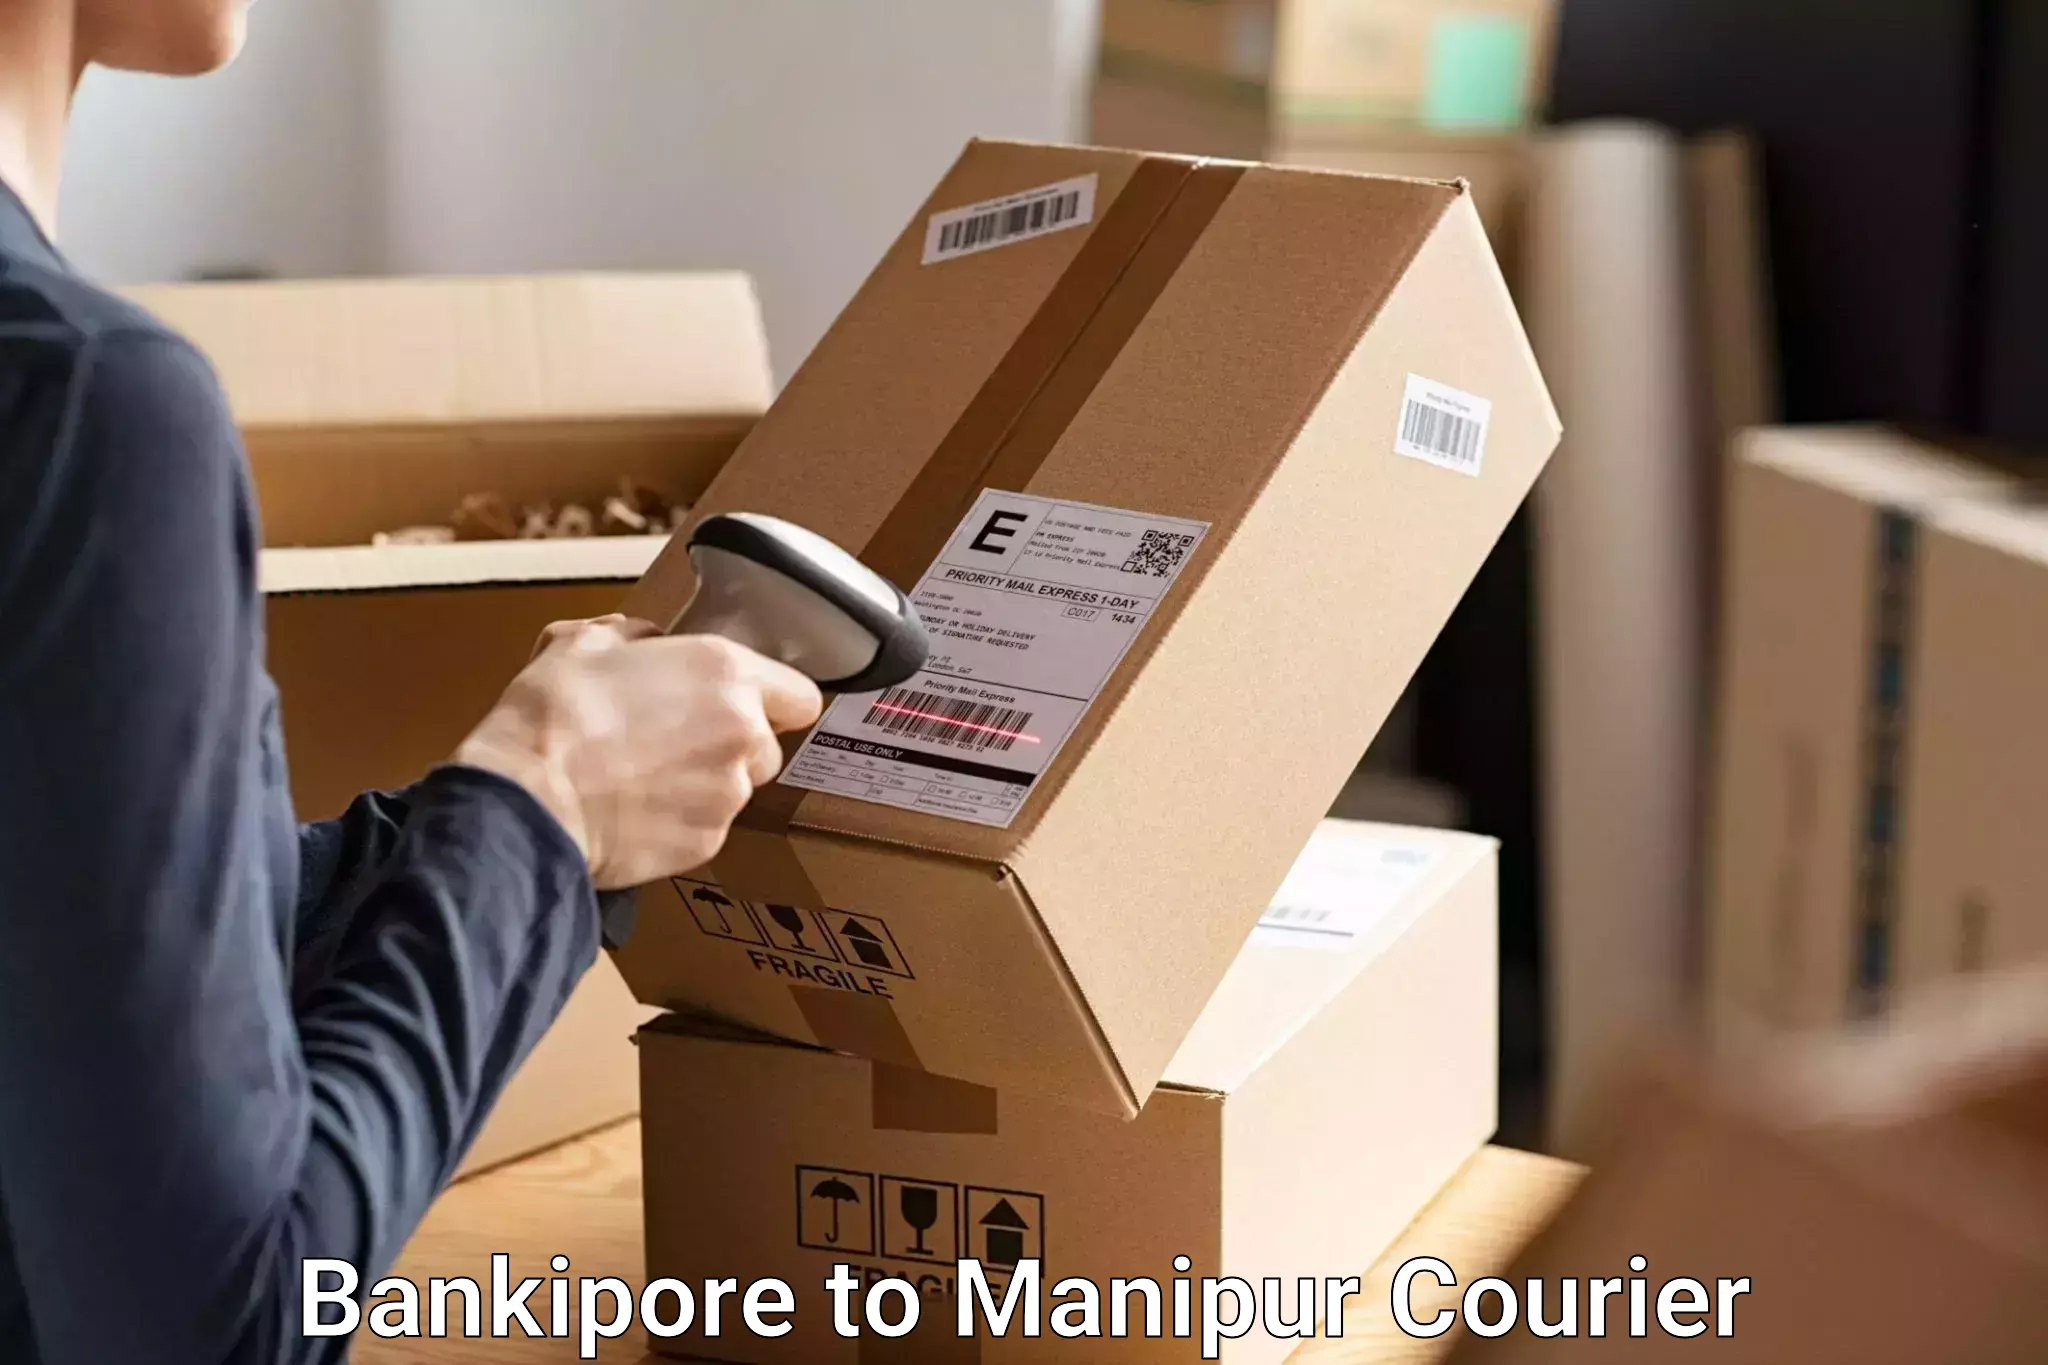 Luggage transit service Bankipore to Manipur